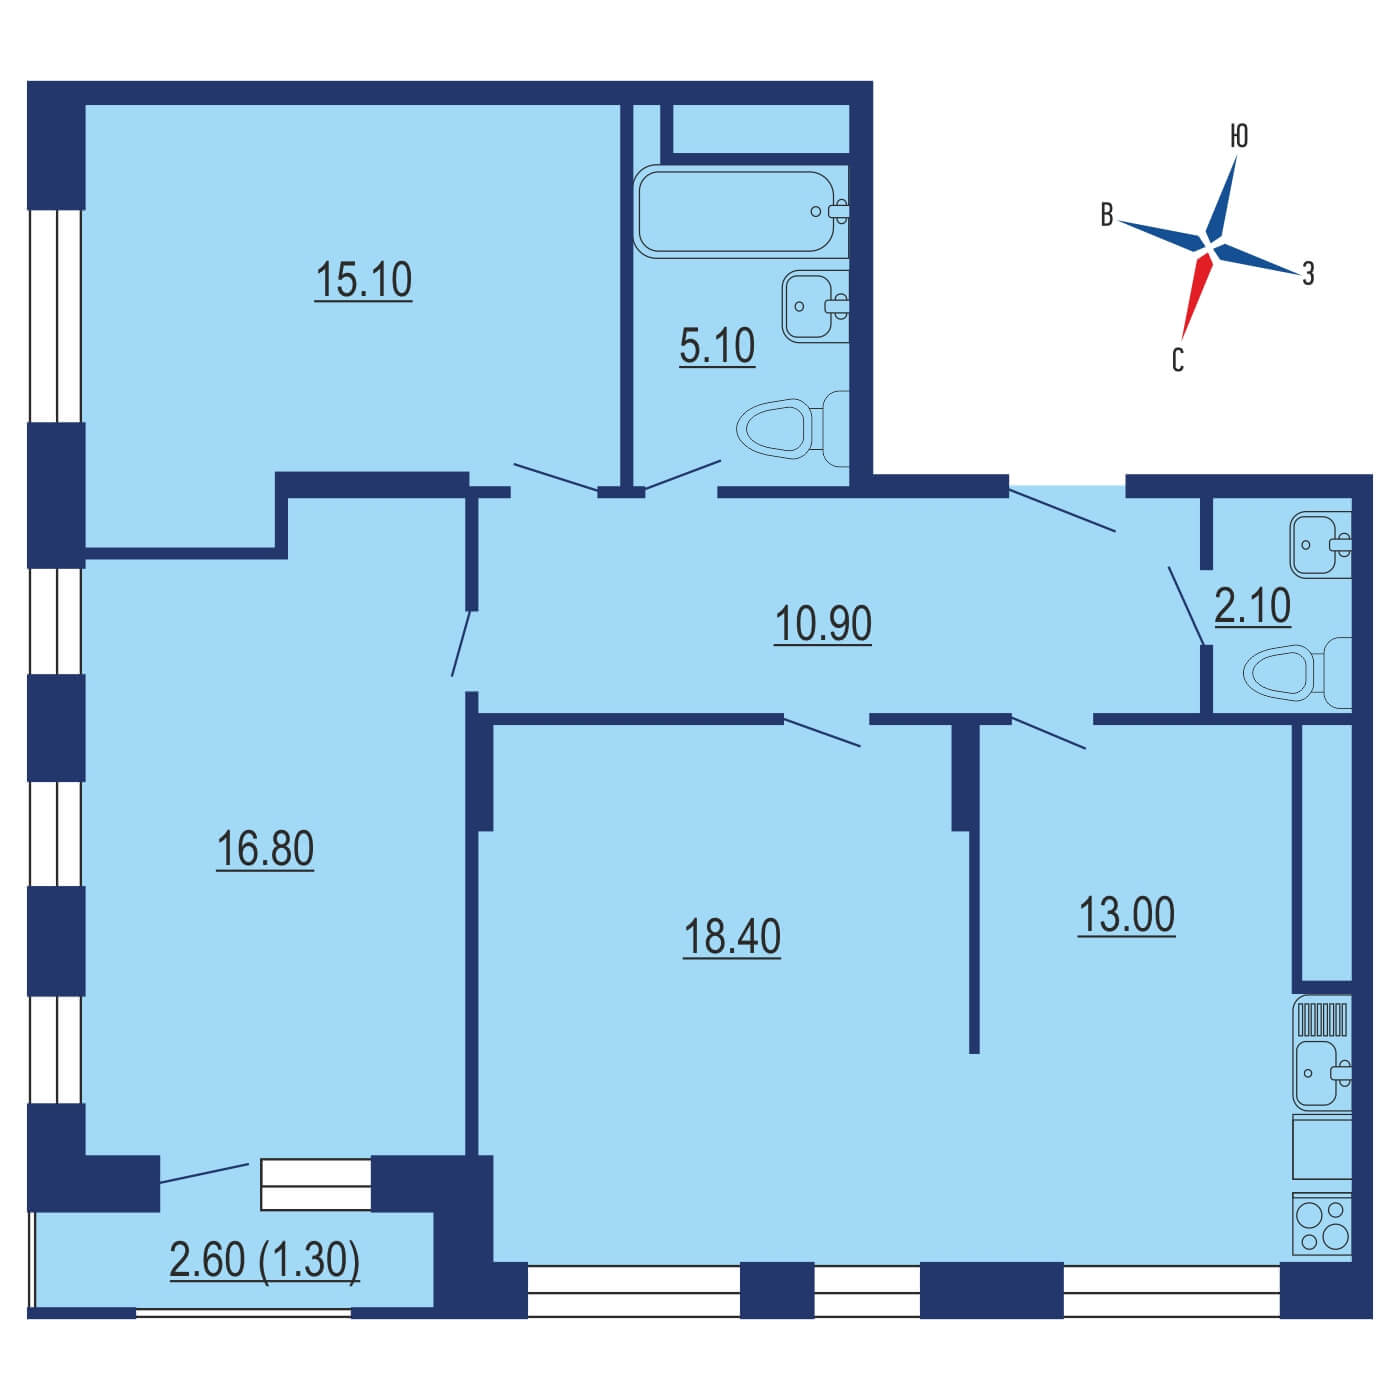 Планировка 3х комнатной квартиры 79.05м² на 2 этаже в ЖК Одинград. Семейный квартал